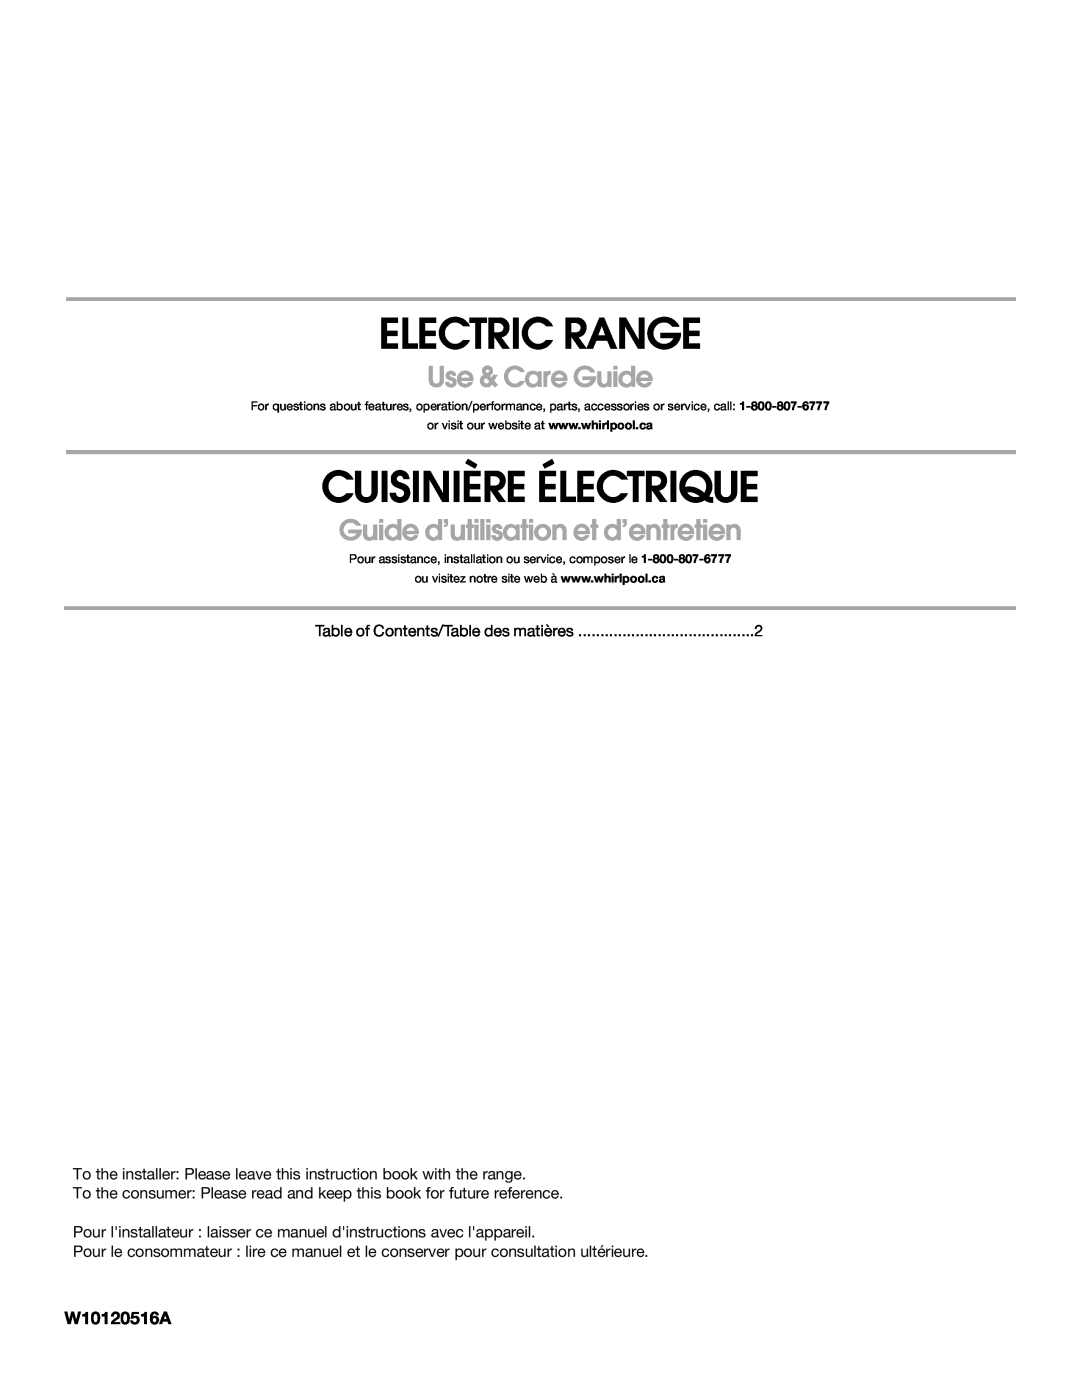 Whirlpool W10120516A manual Electric Range, Cuisinière Électrique, Use & Care Guide, Guide d’utilisation et d’entretien 